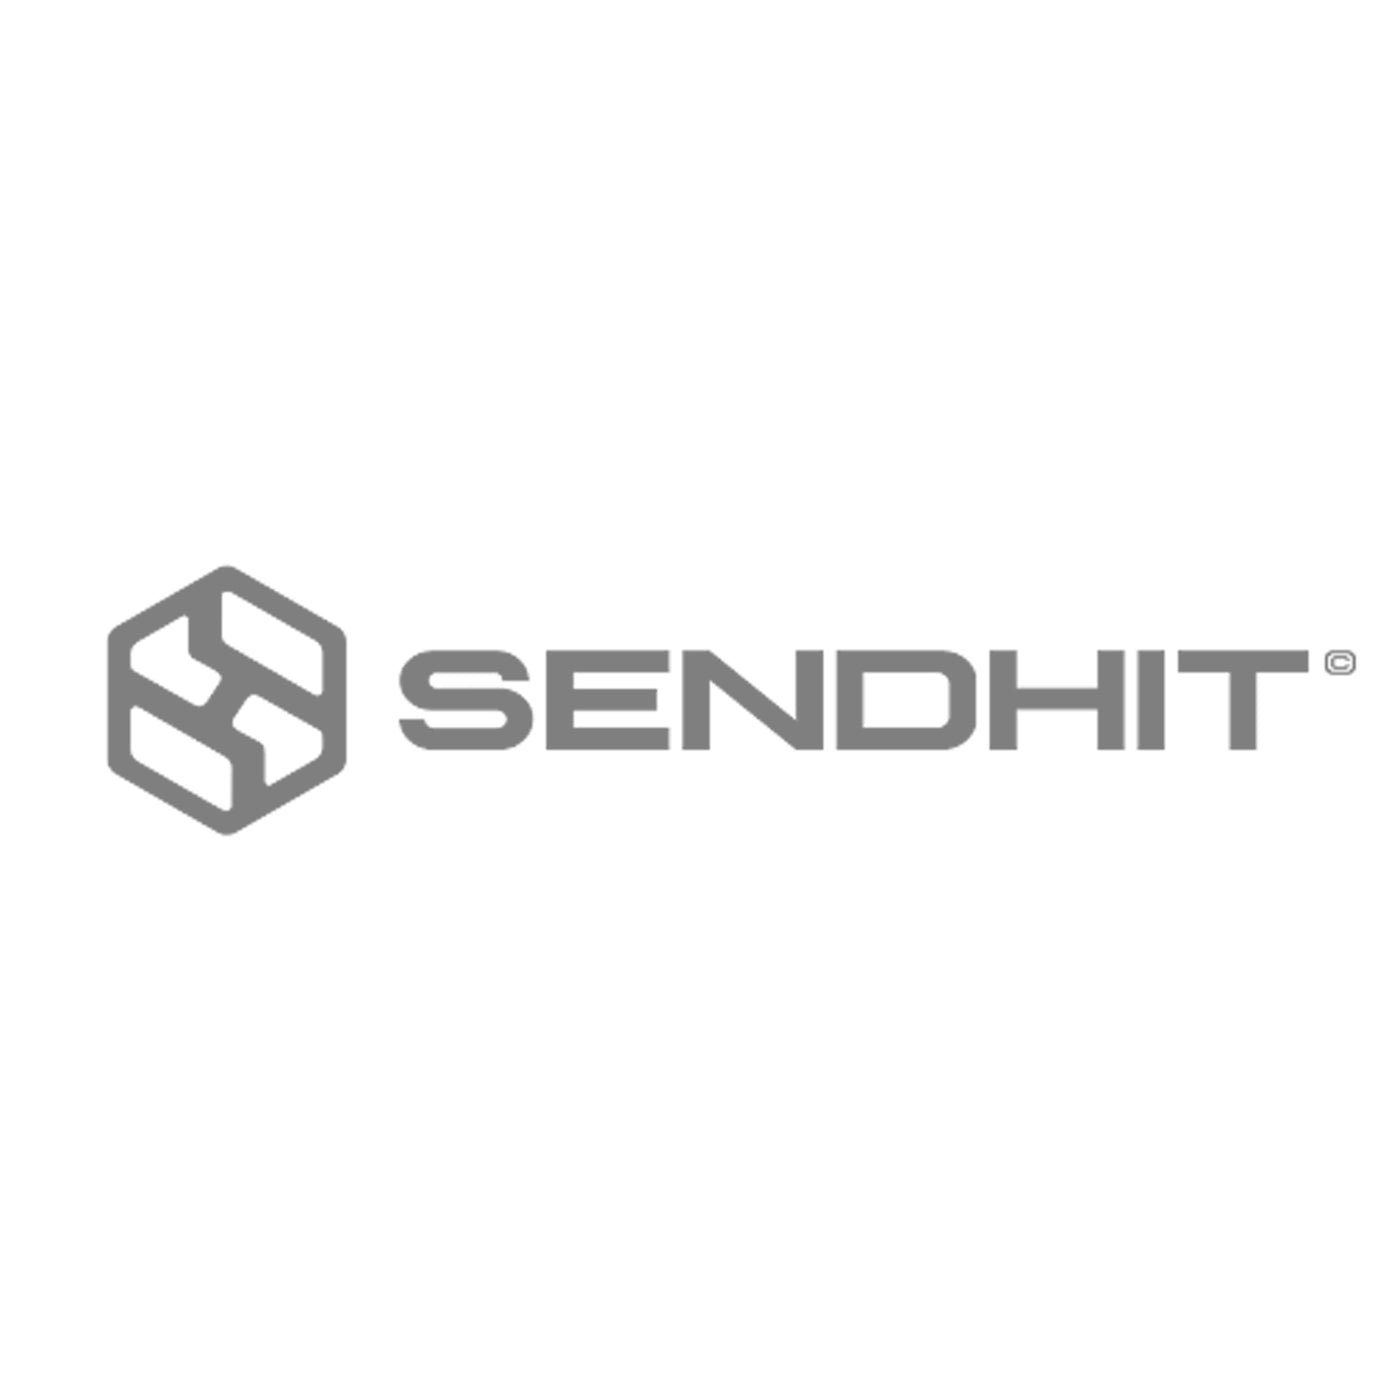 SendHit Scratch Cover Fourche / Amortisseur / Tige de selle Kit de réparation